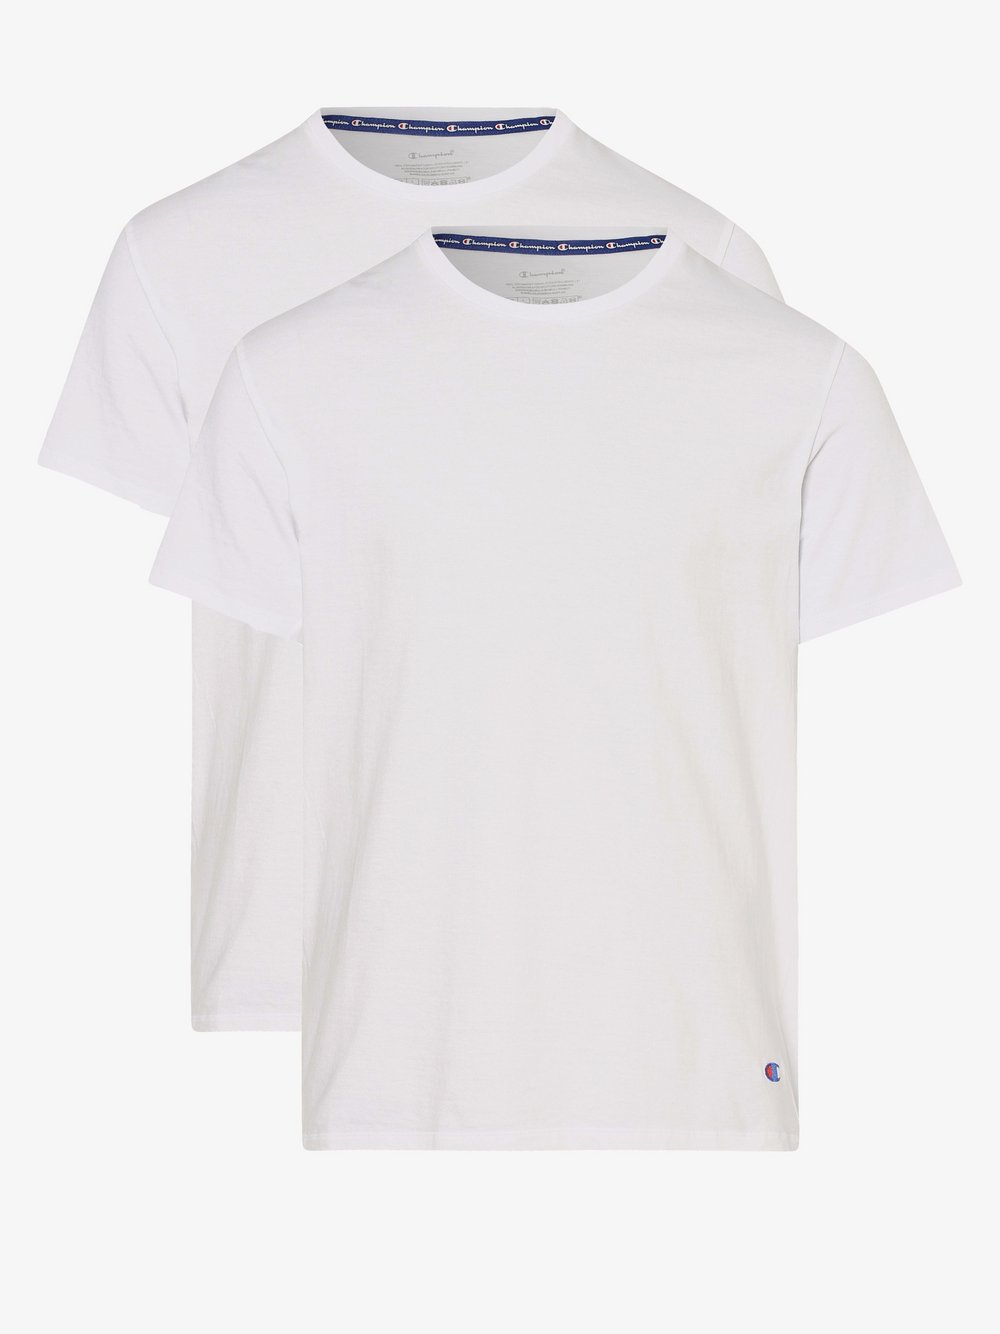 Champion - T-shirty męskie pakowane po 2 szt., biały